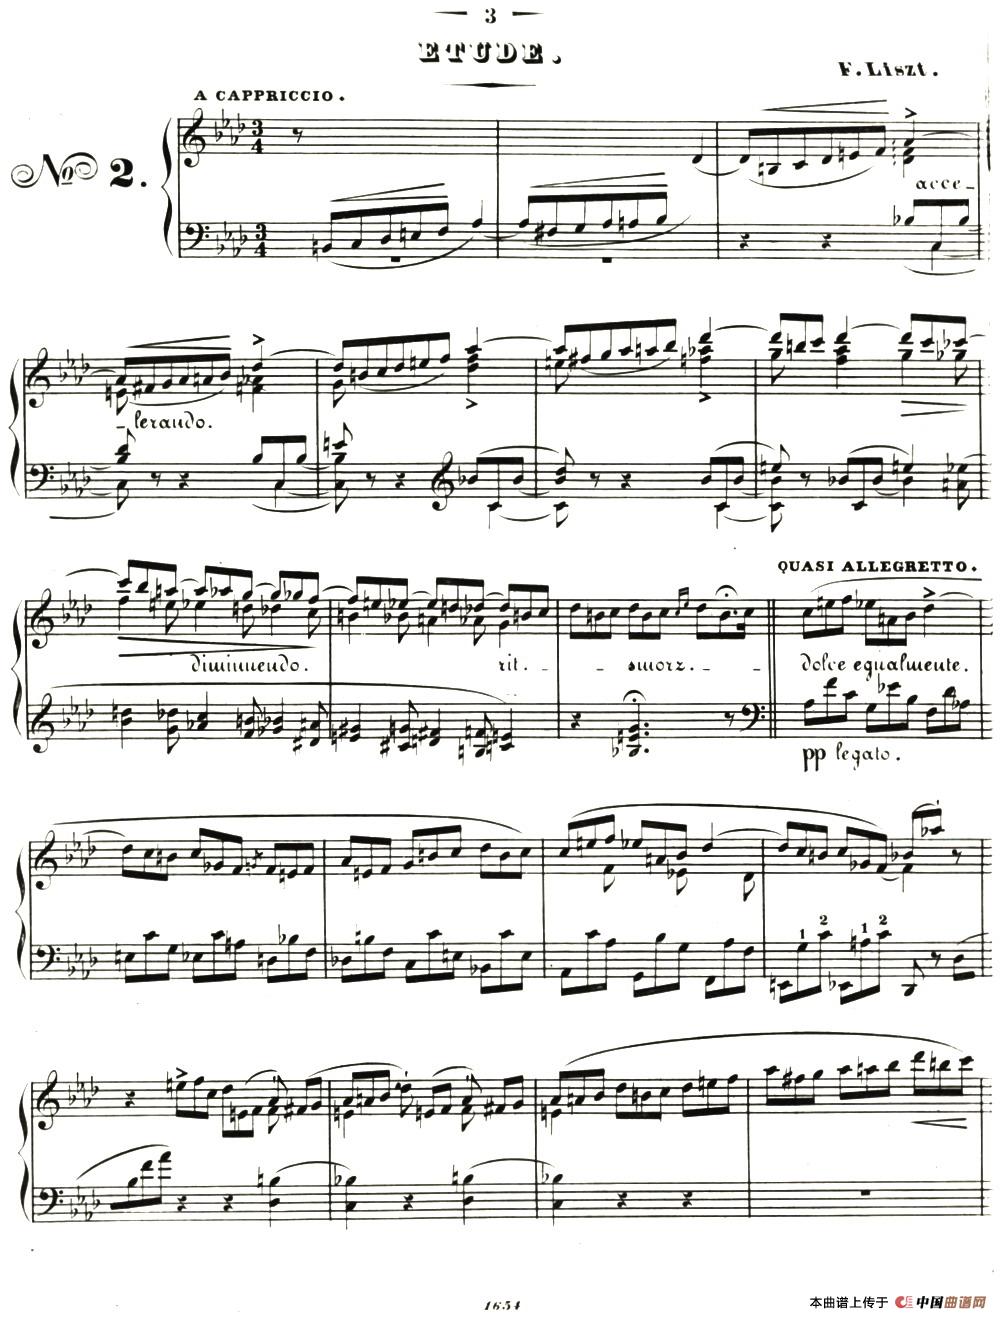 李斯特音乐会练习曲 S144（2 轻盈 f小调 S144 La leggierezza F minor）(1)_014=.jpg